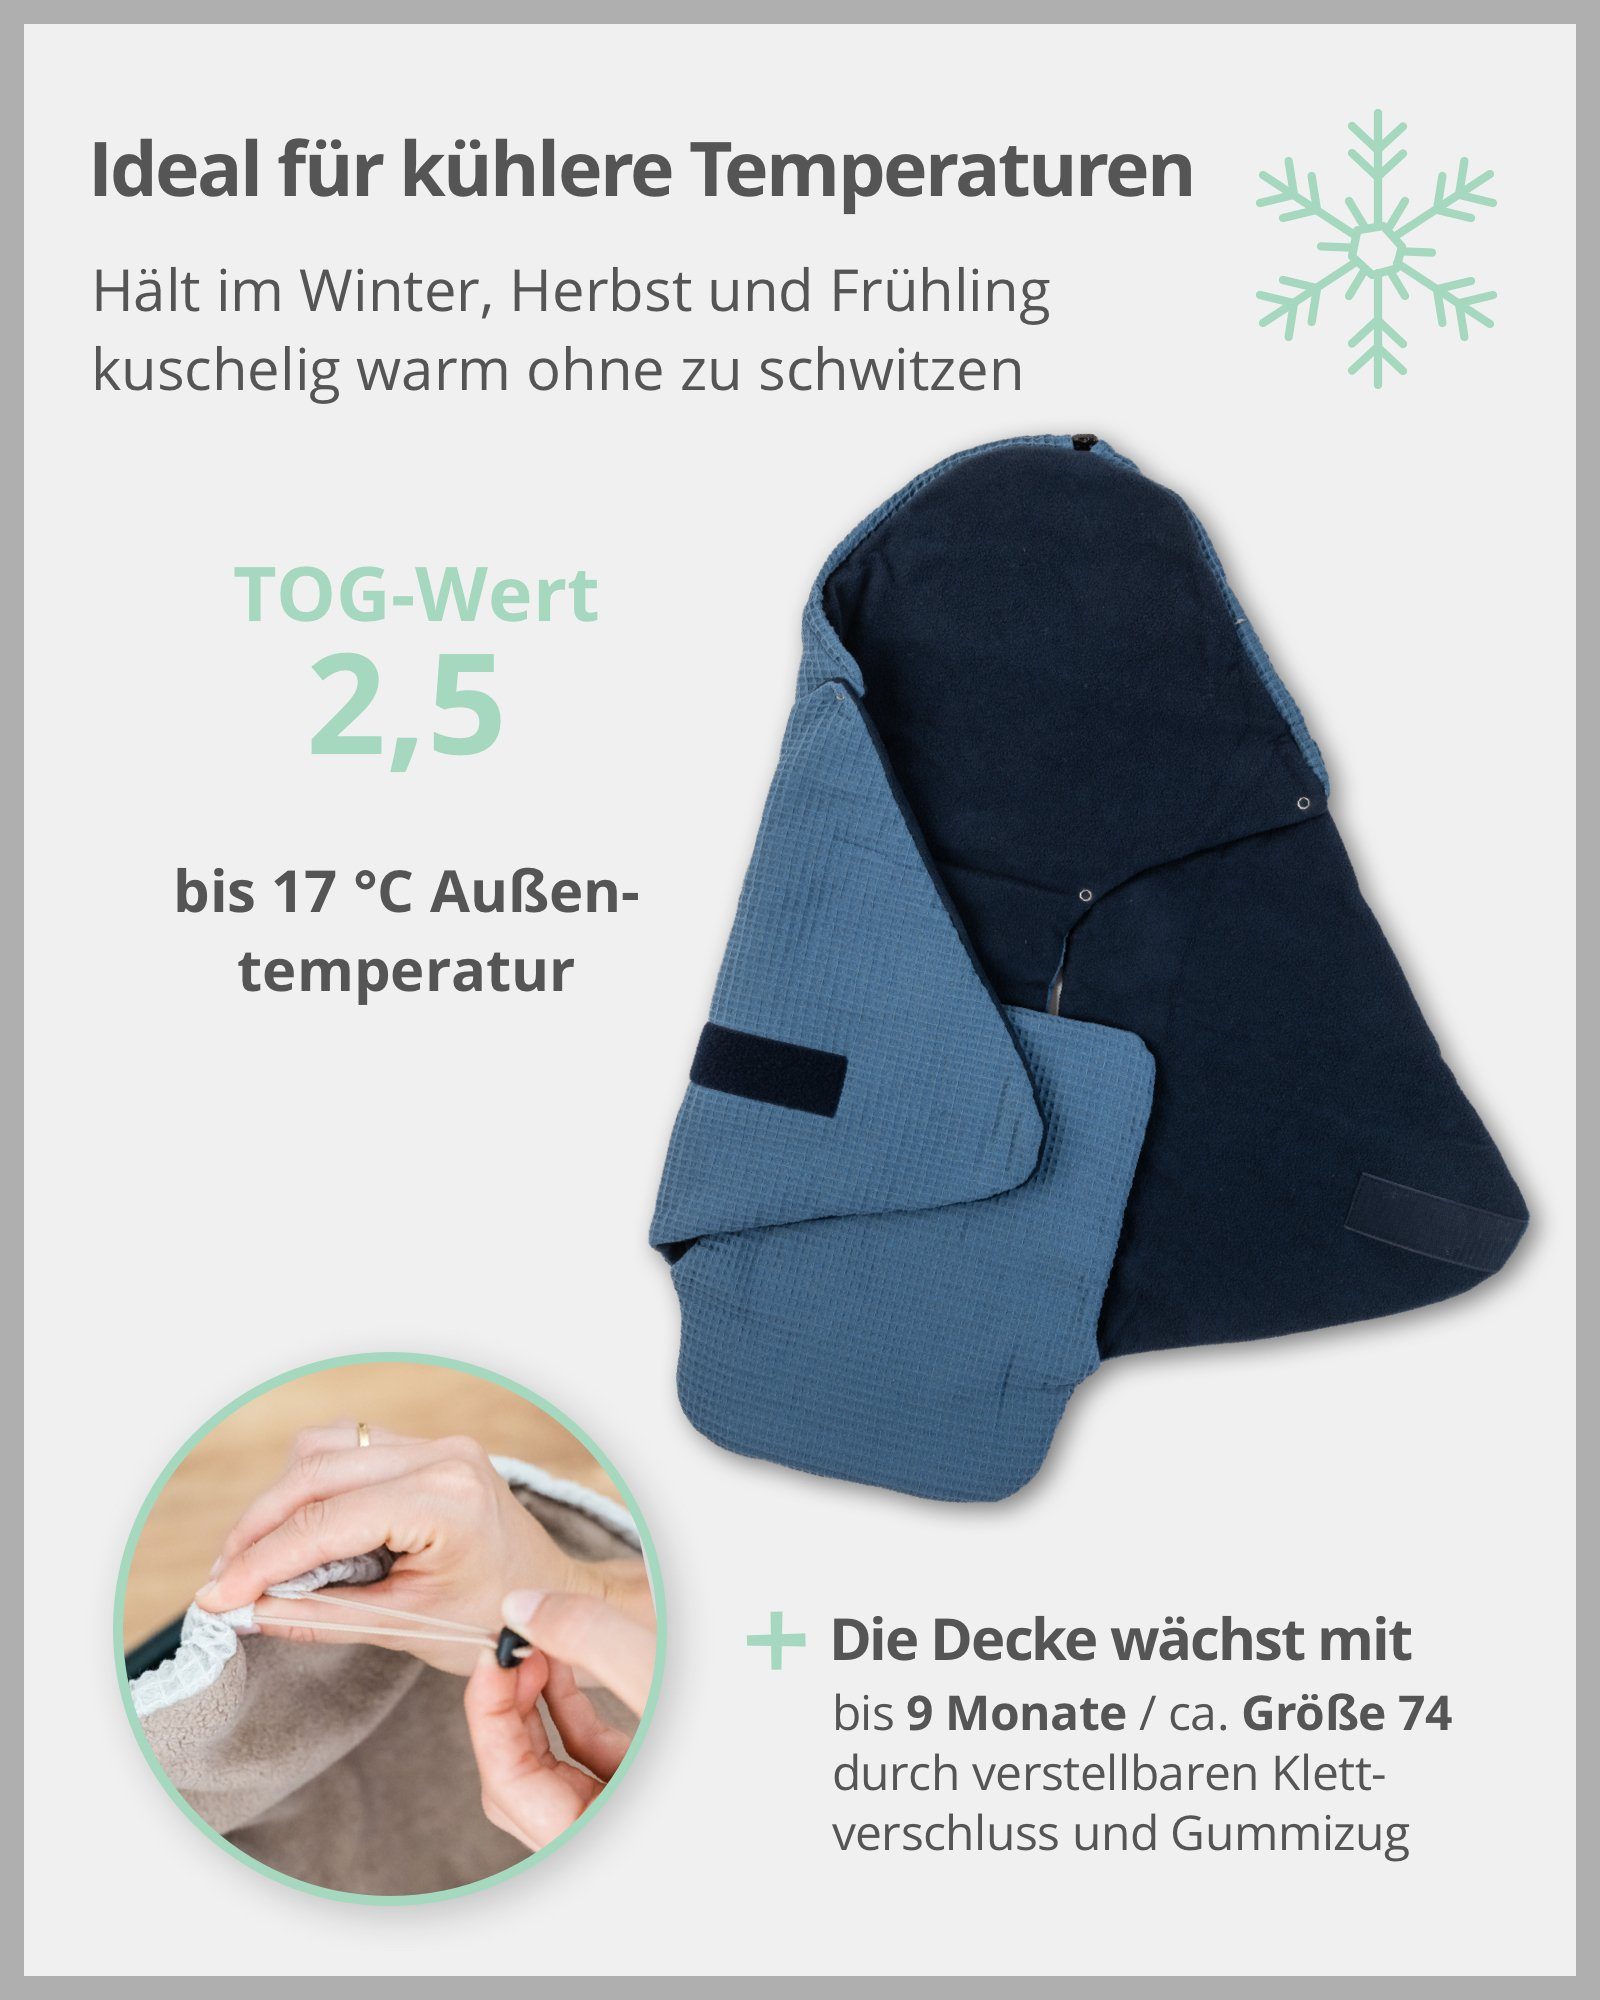 EU für Winter Herbst, Frühling, - die ®, in Für Design: Autositz, Grün, Babyschale ULLENBOOM Made 2,5, Optimal und Blau Floral Einschlagdecke TOG-Wert -